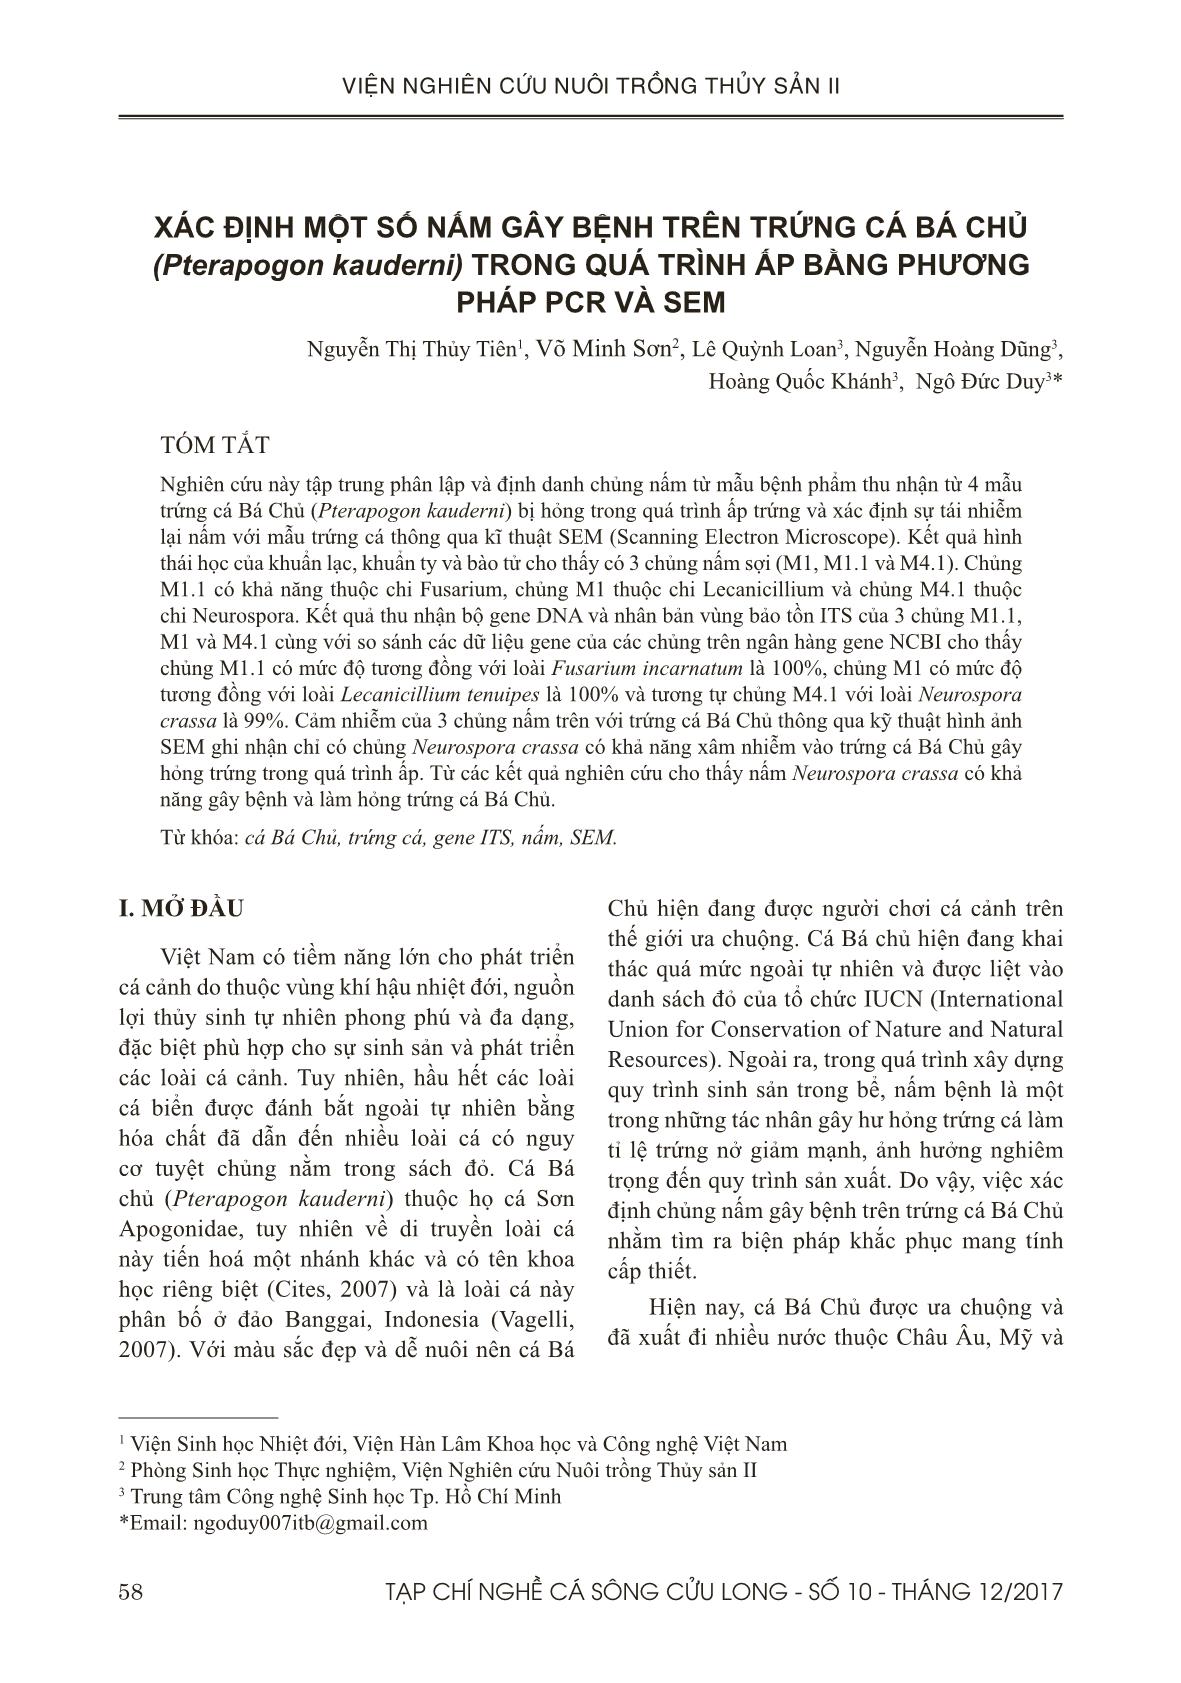 Xác định một số nấm gây bệnh trên trứng cá bá chủ (pterapogon kauderni) trong quá trình ấp bằng phương pháp pcr và sem trang 1